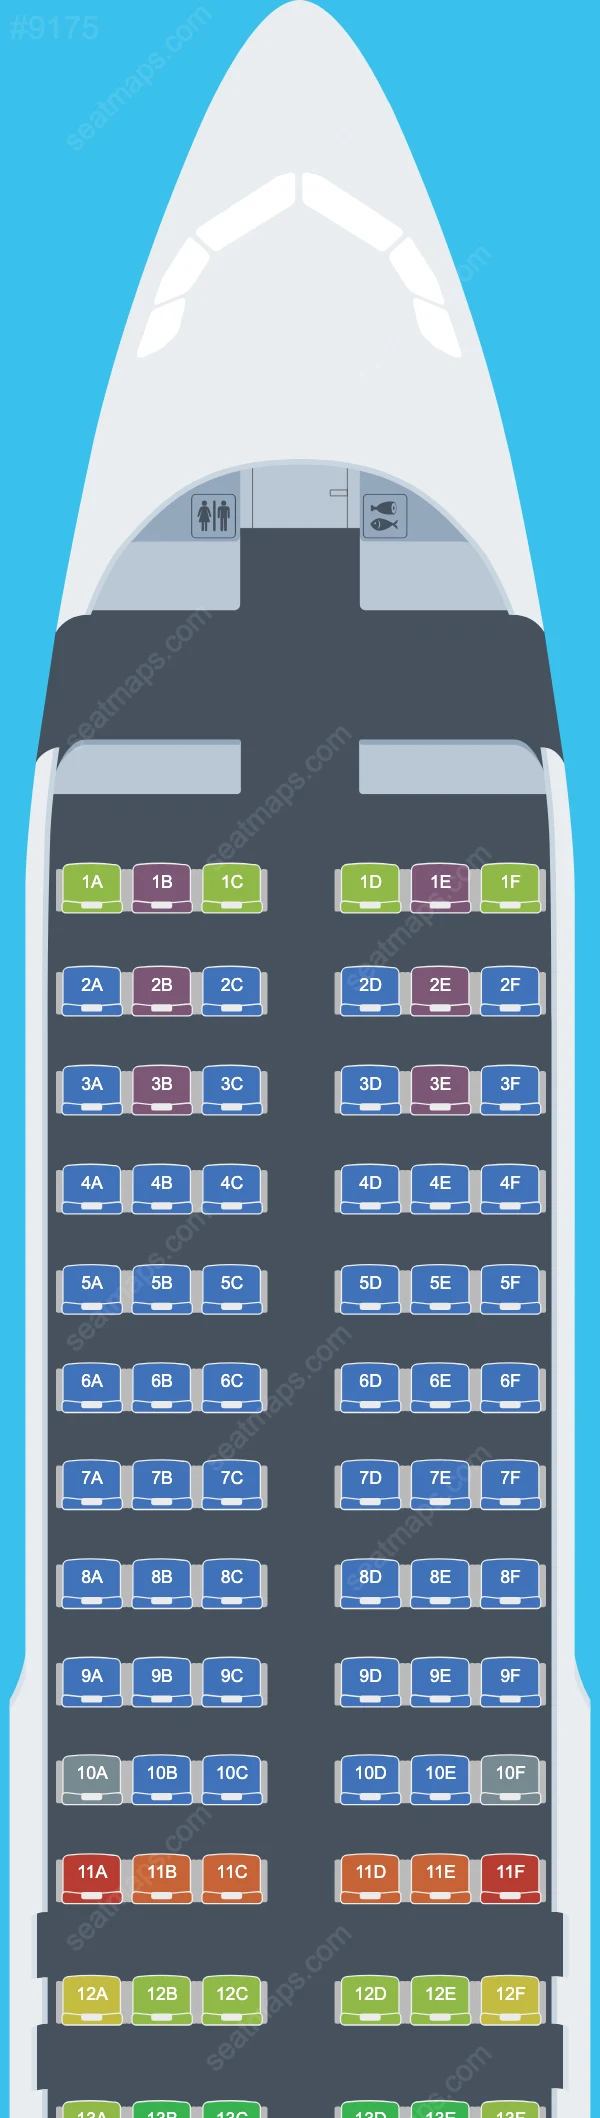 Air Serbia Airbus A320 Seat Maps A320-200 V.4